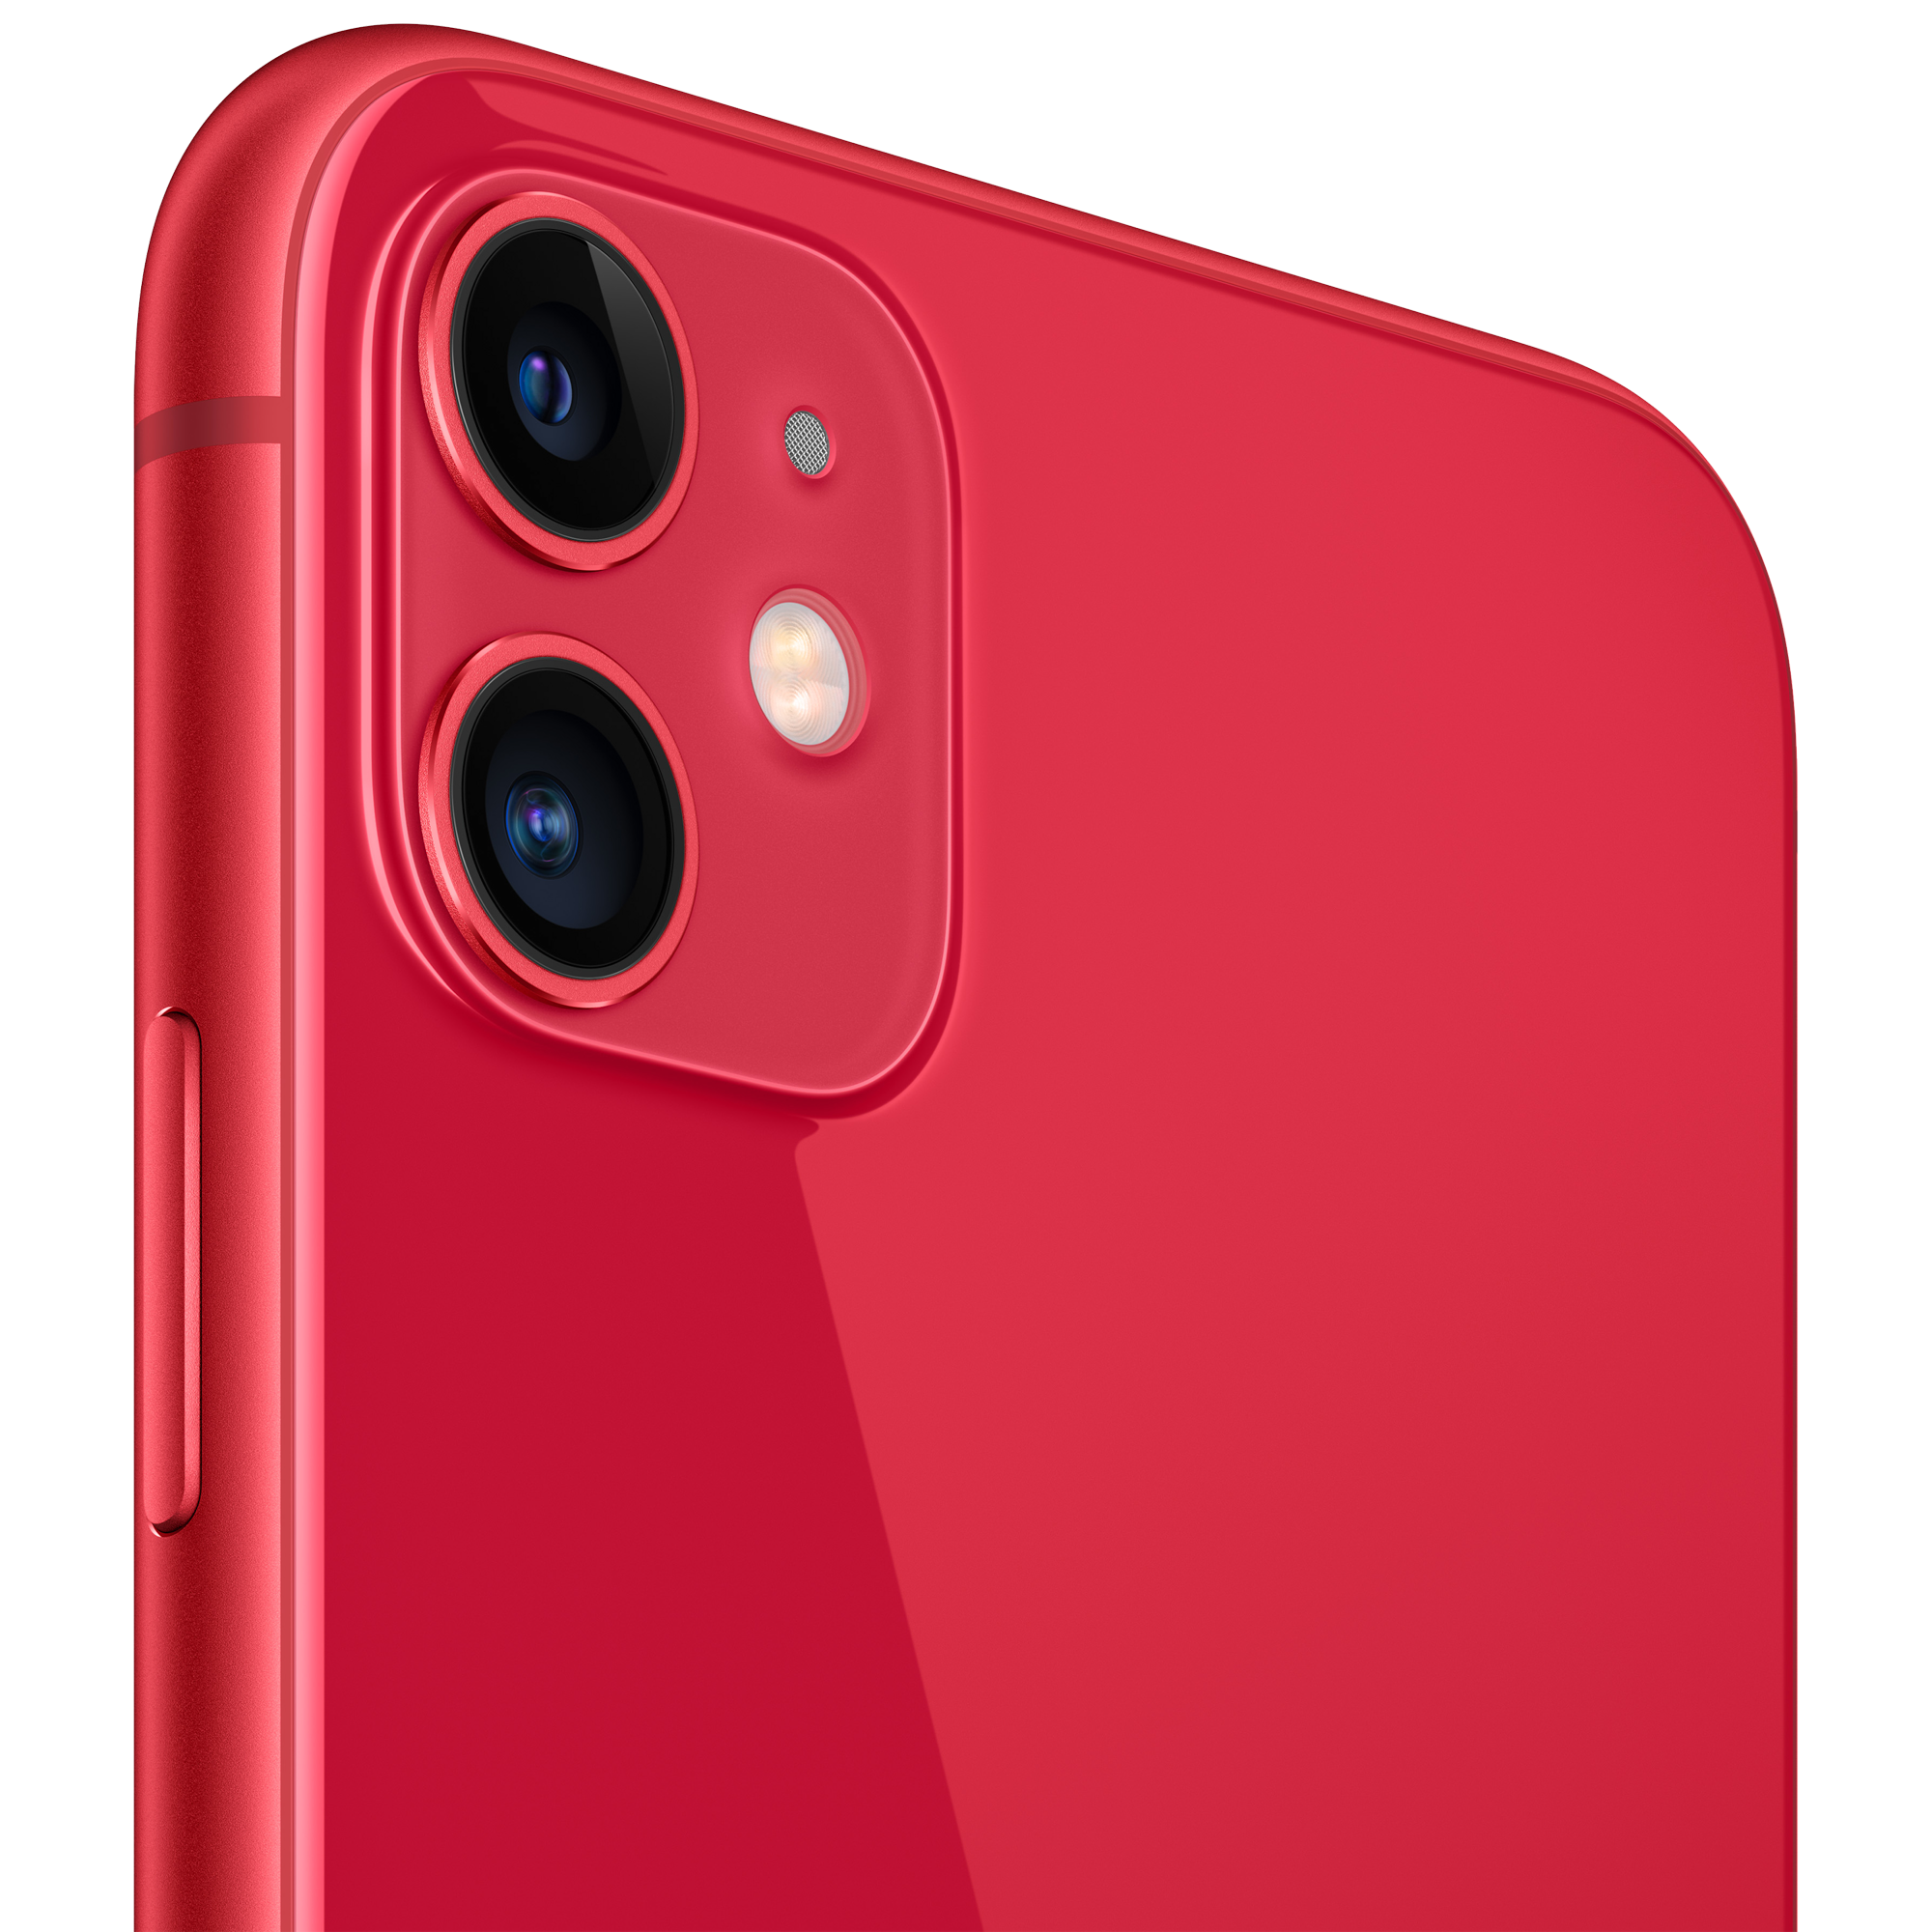 Refurbished iPhone 11 64GB rood kopen? 2 jaar garantie! | FixjeiPhone.nl